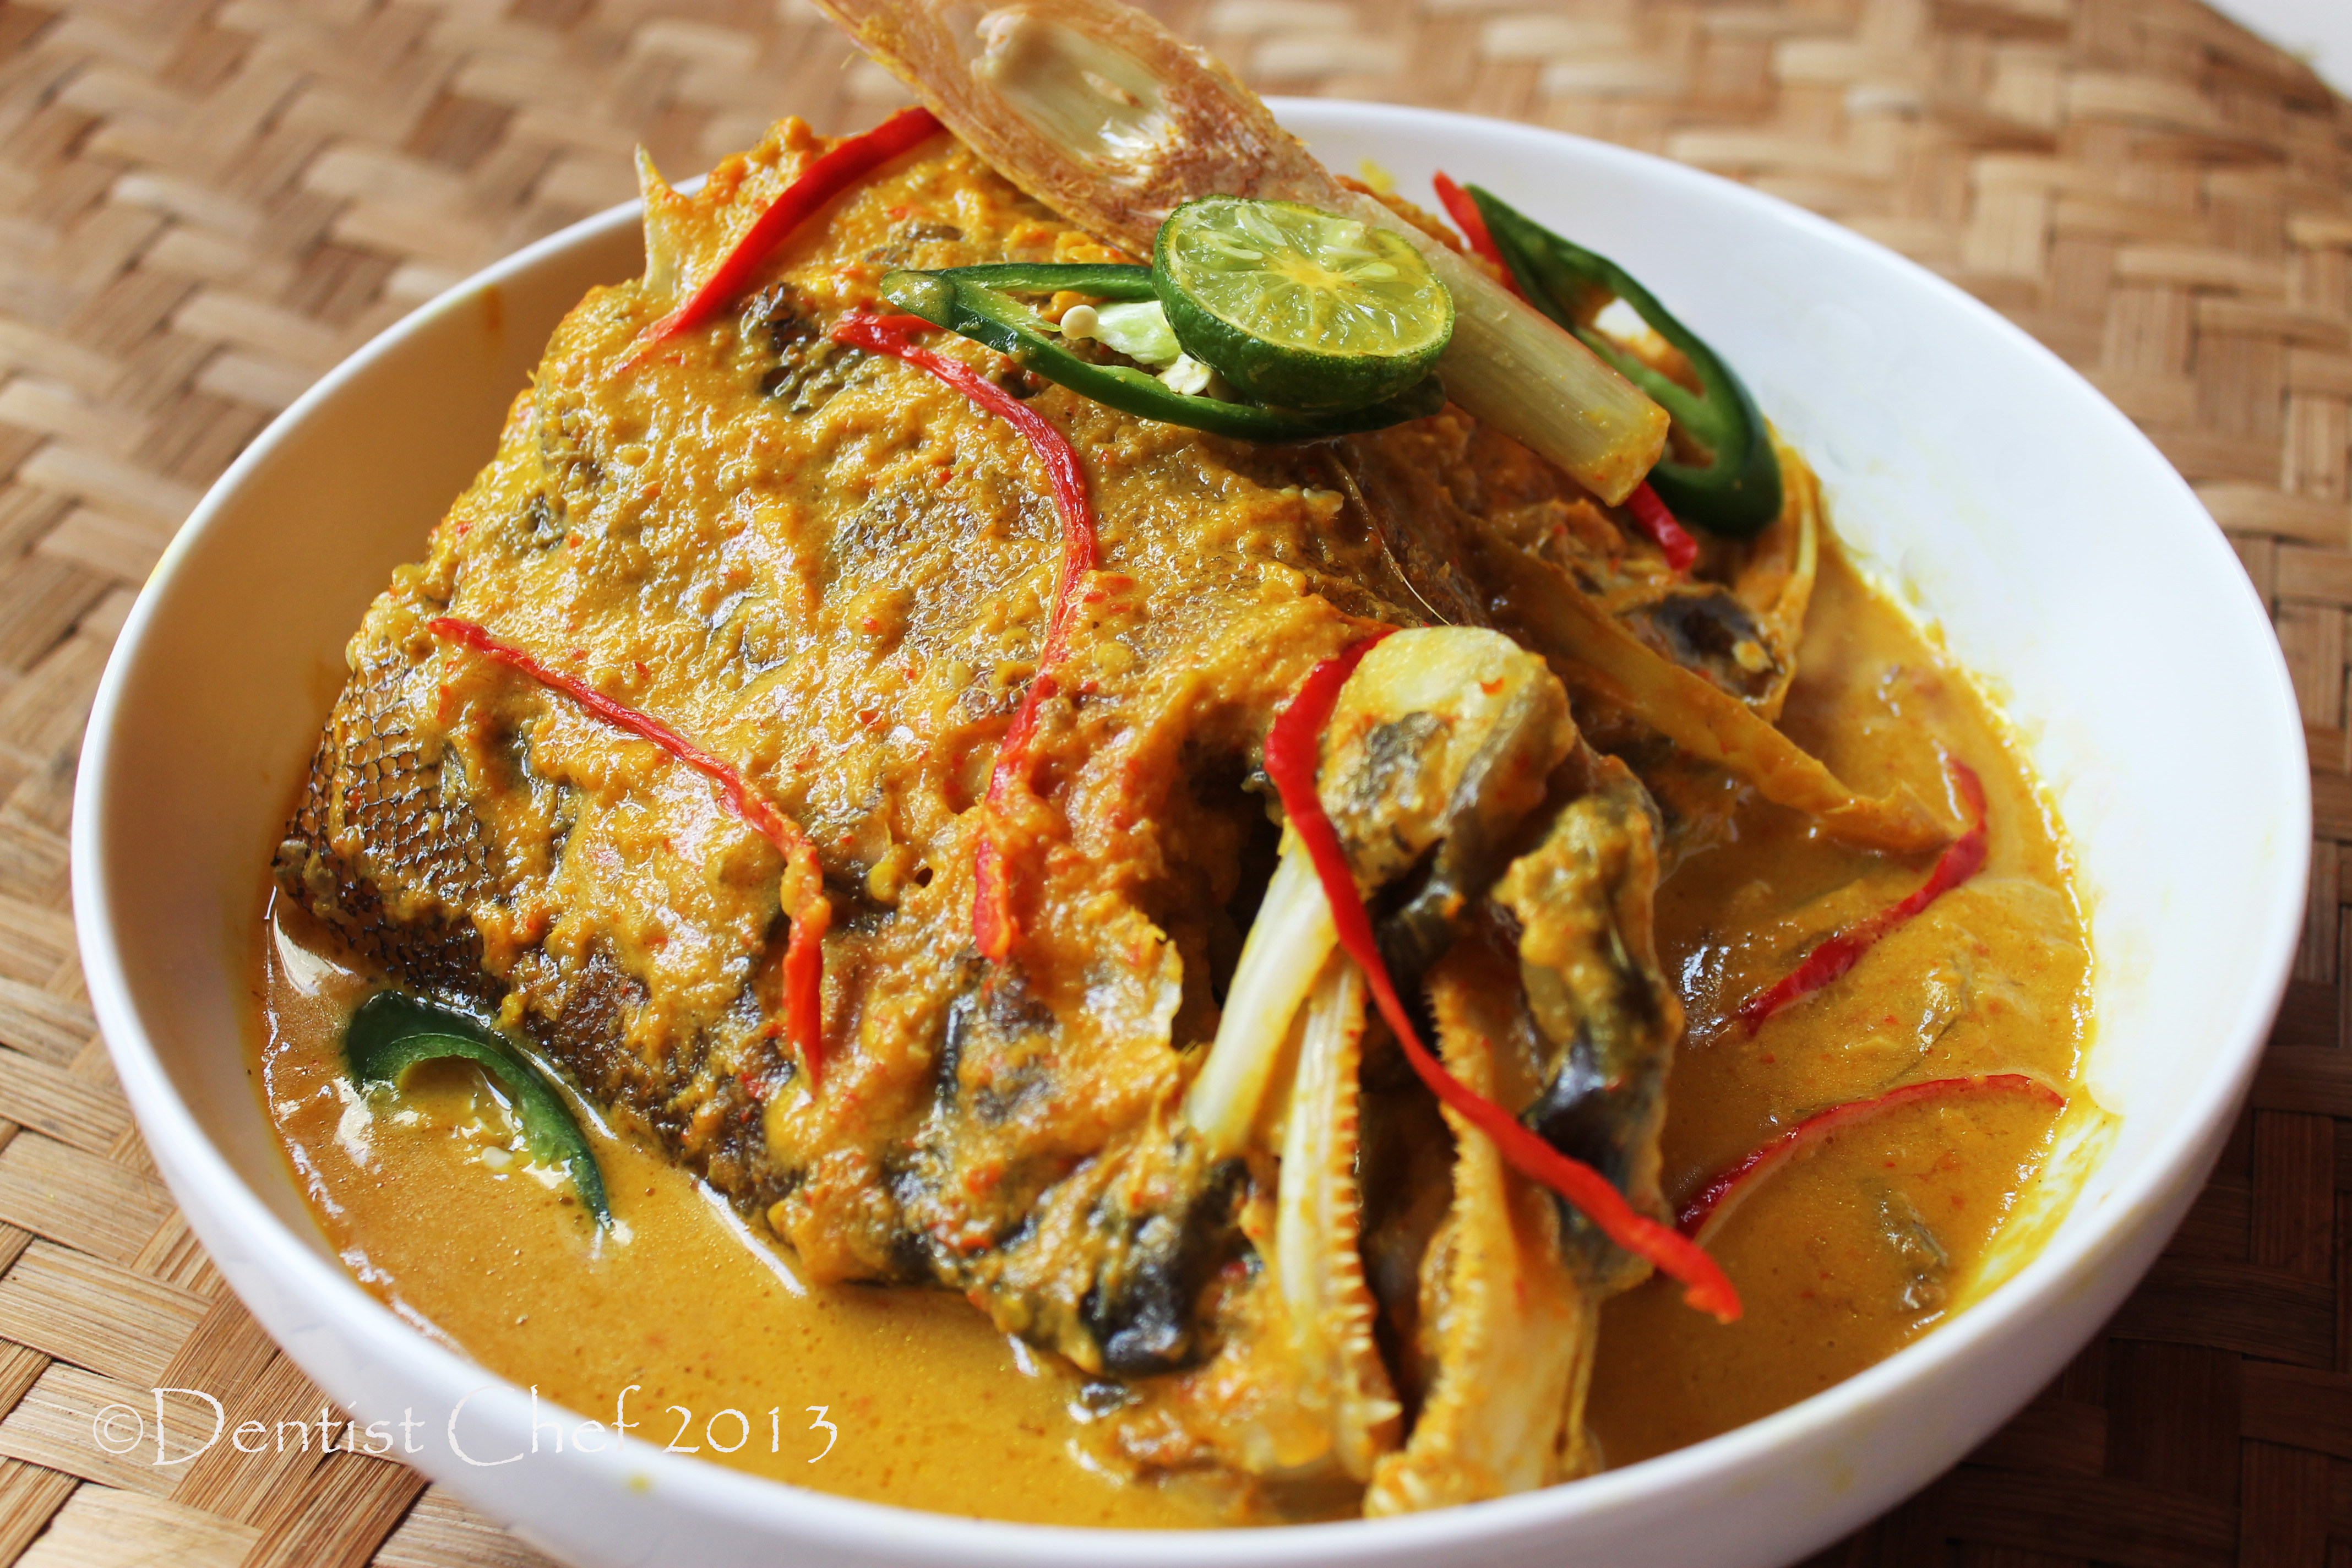 Resep iWokui iIkani Belanga Khas Manado Manadonese Spicy Fish 